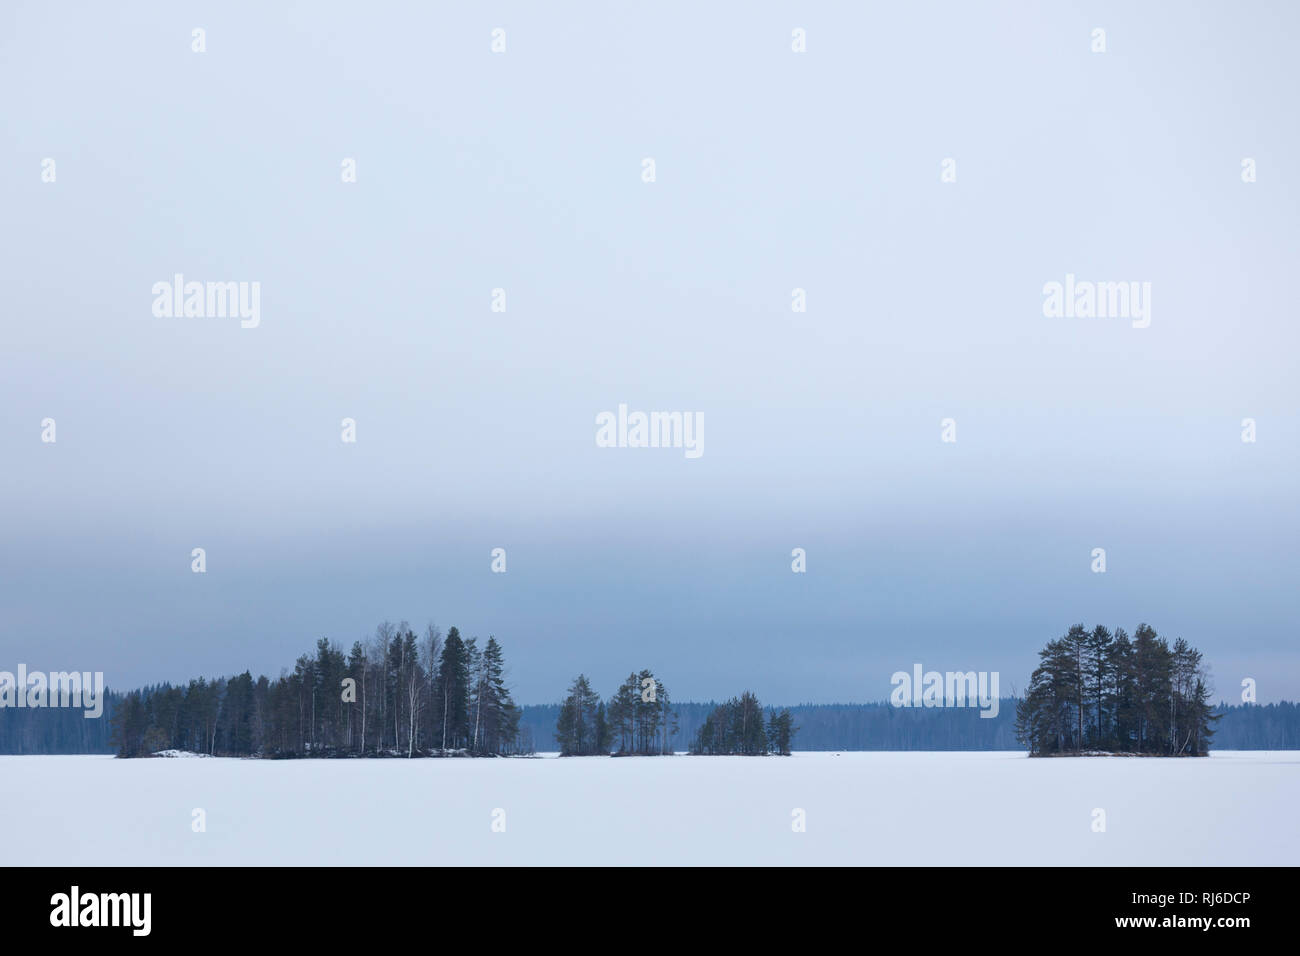 Finnland, Siamaa-Gebiet, Landschaft mit Schnee und Bäumen im inverno Foto Stock